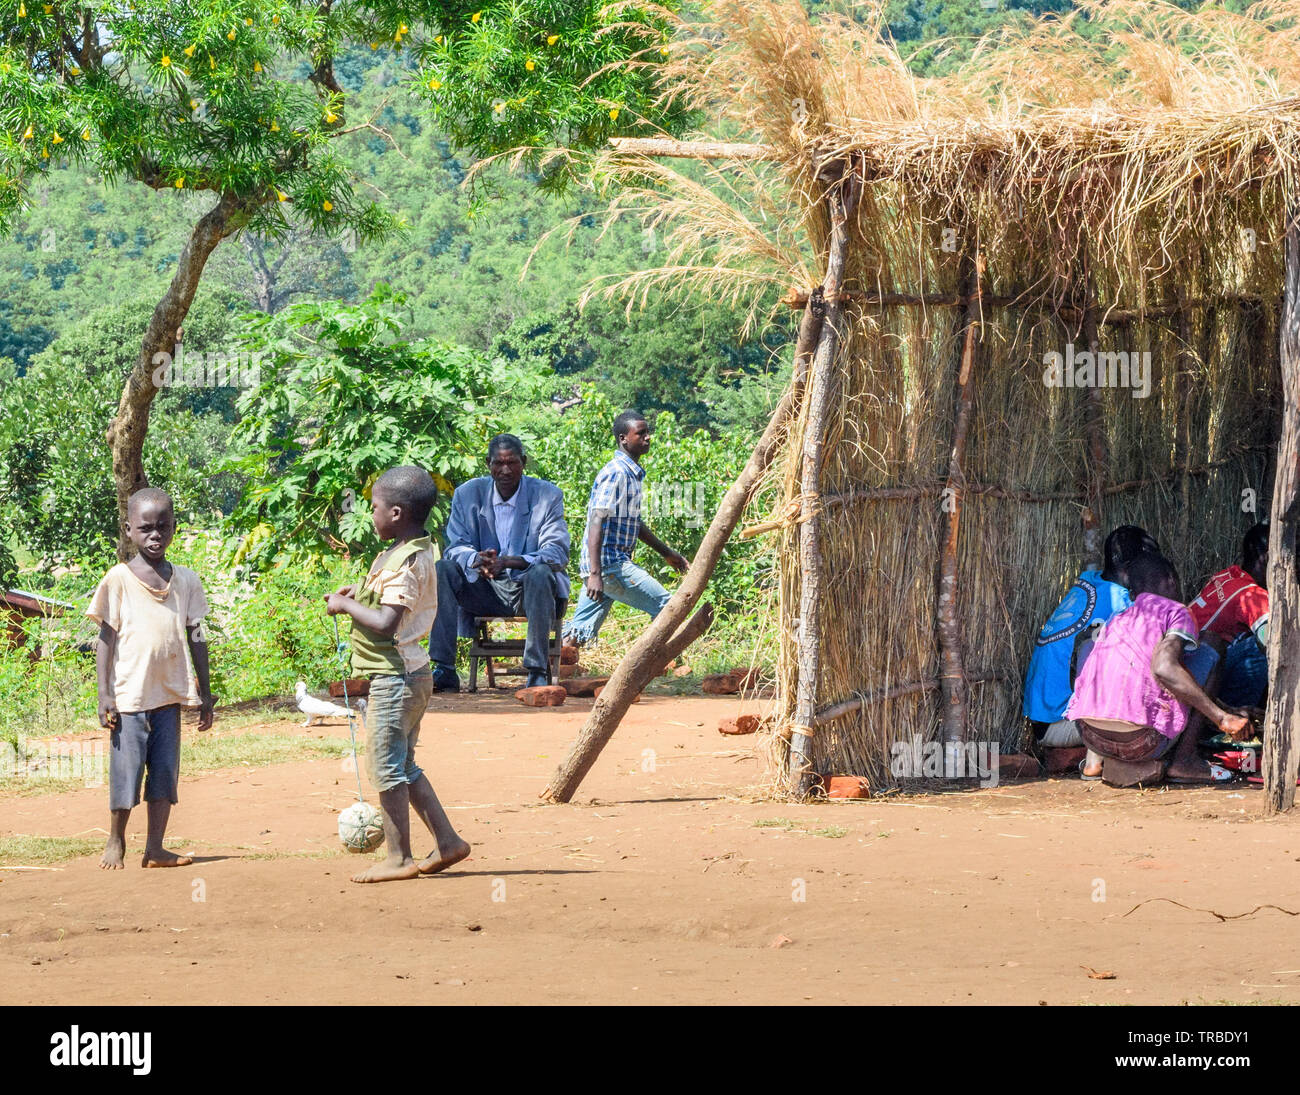 Les garçons jouent avec une balle faite de sacs de plastique et de chaîne dans un village du Malawi Banque D'Images